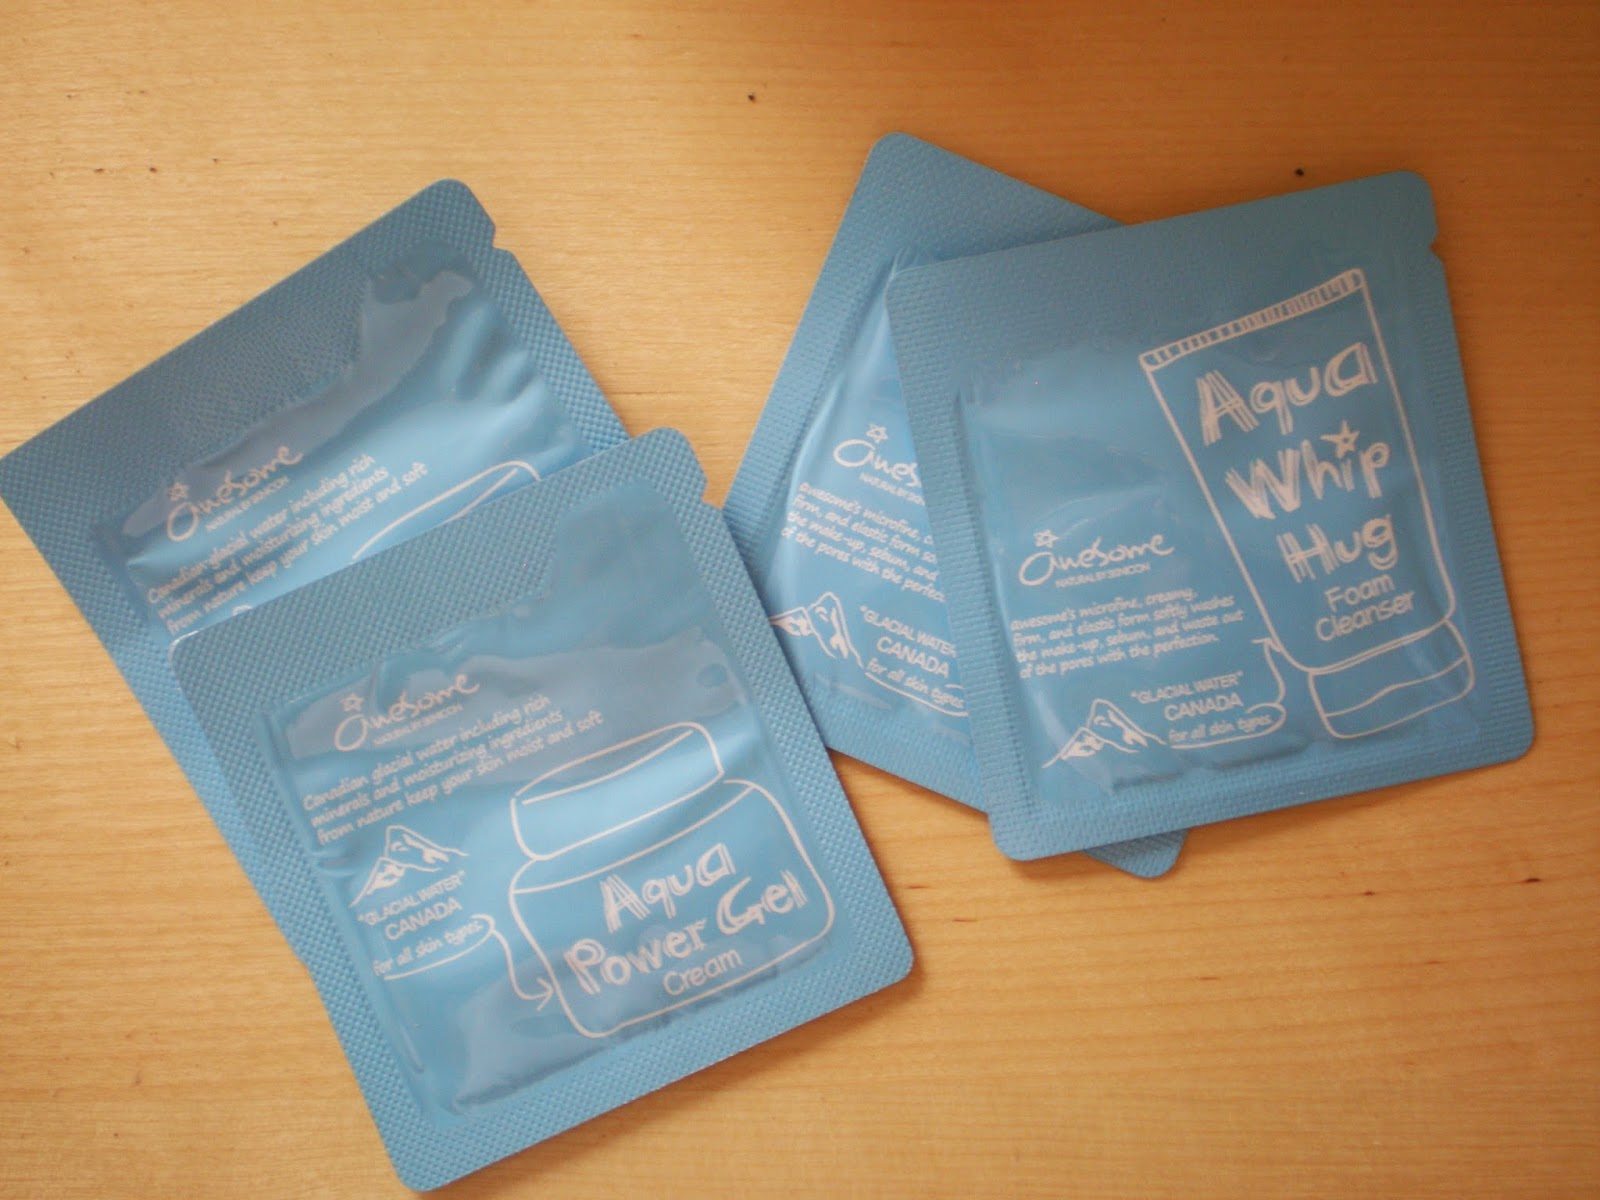 Αwesome Aqua Whip Hug Foam Cleanser & Aqua Power Gel Cream samples